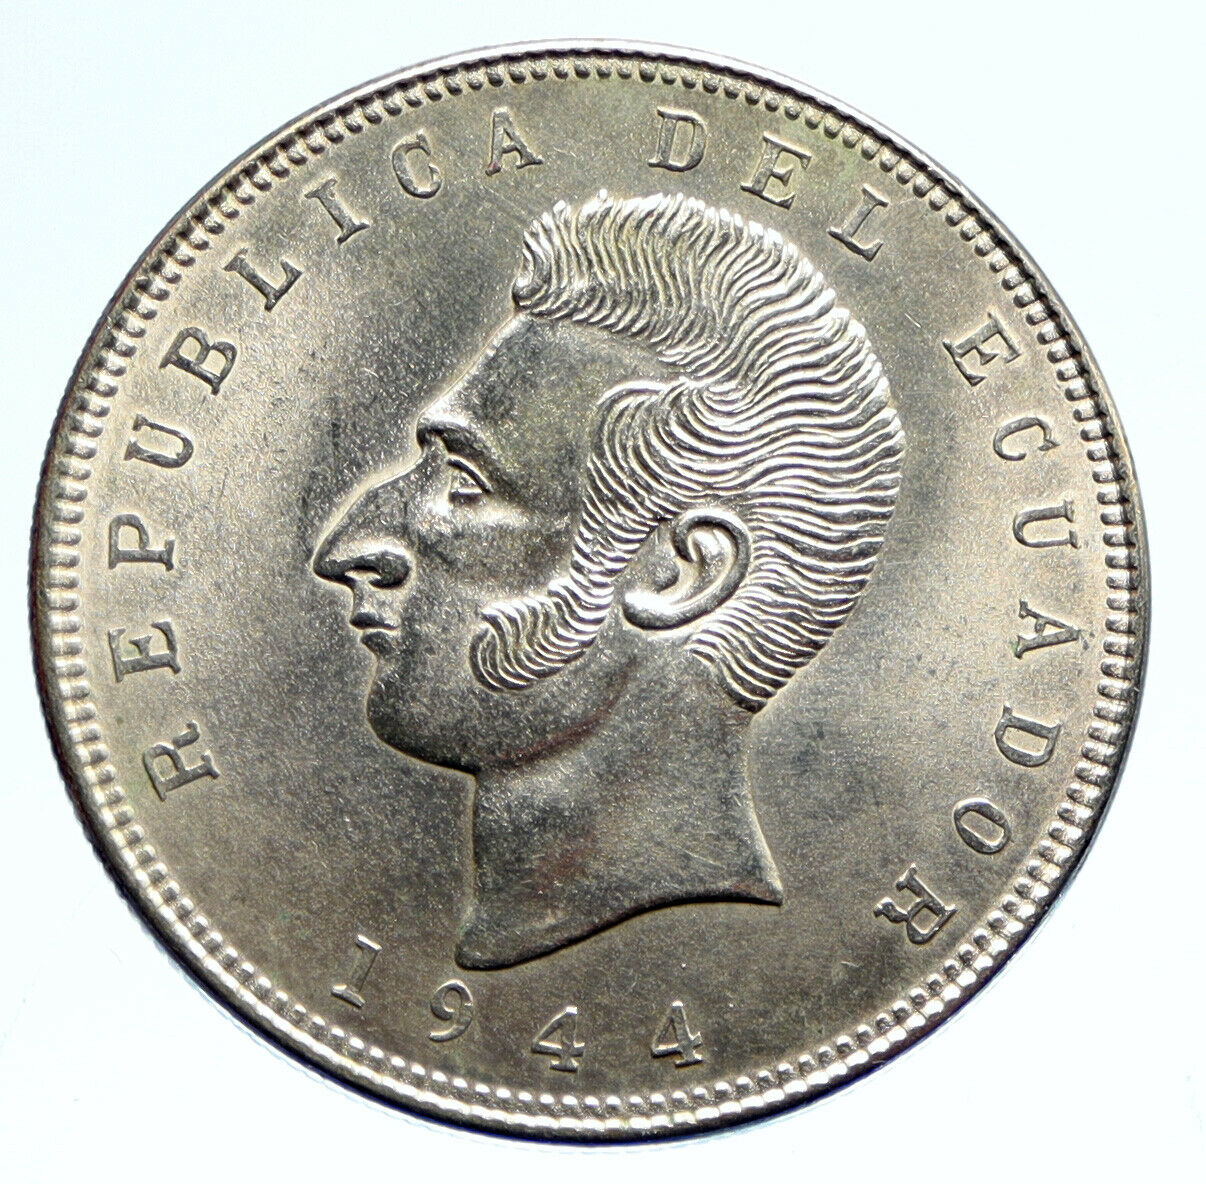 1944 ECUADOR Antonio Jose de Sucre y Alcala VINTAGE Silver 5 Sucres Coin i96083